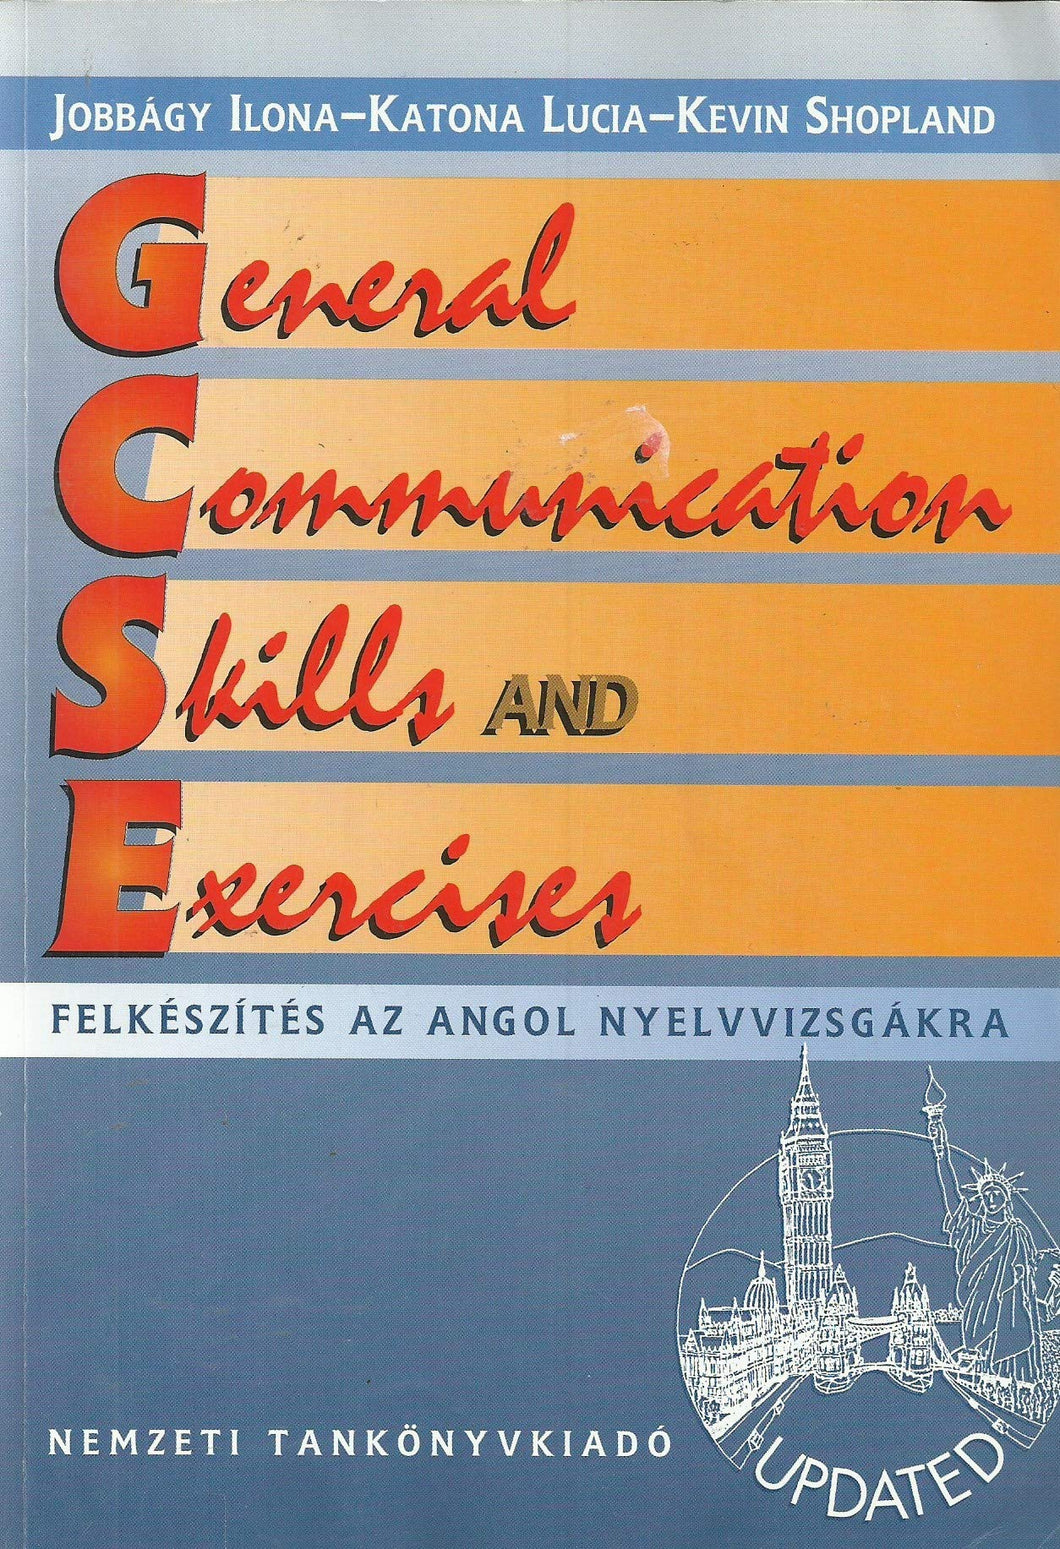 General Communication Skills and Exercises - Felkészítés as Angol Nyelvvizsgákra - Updated